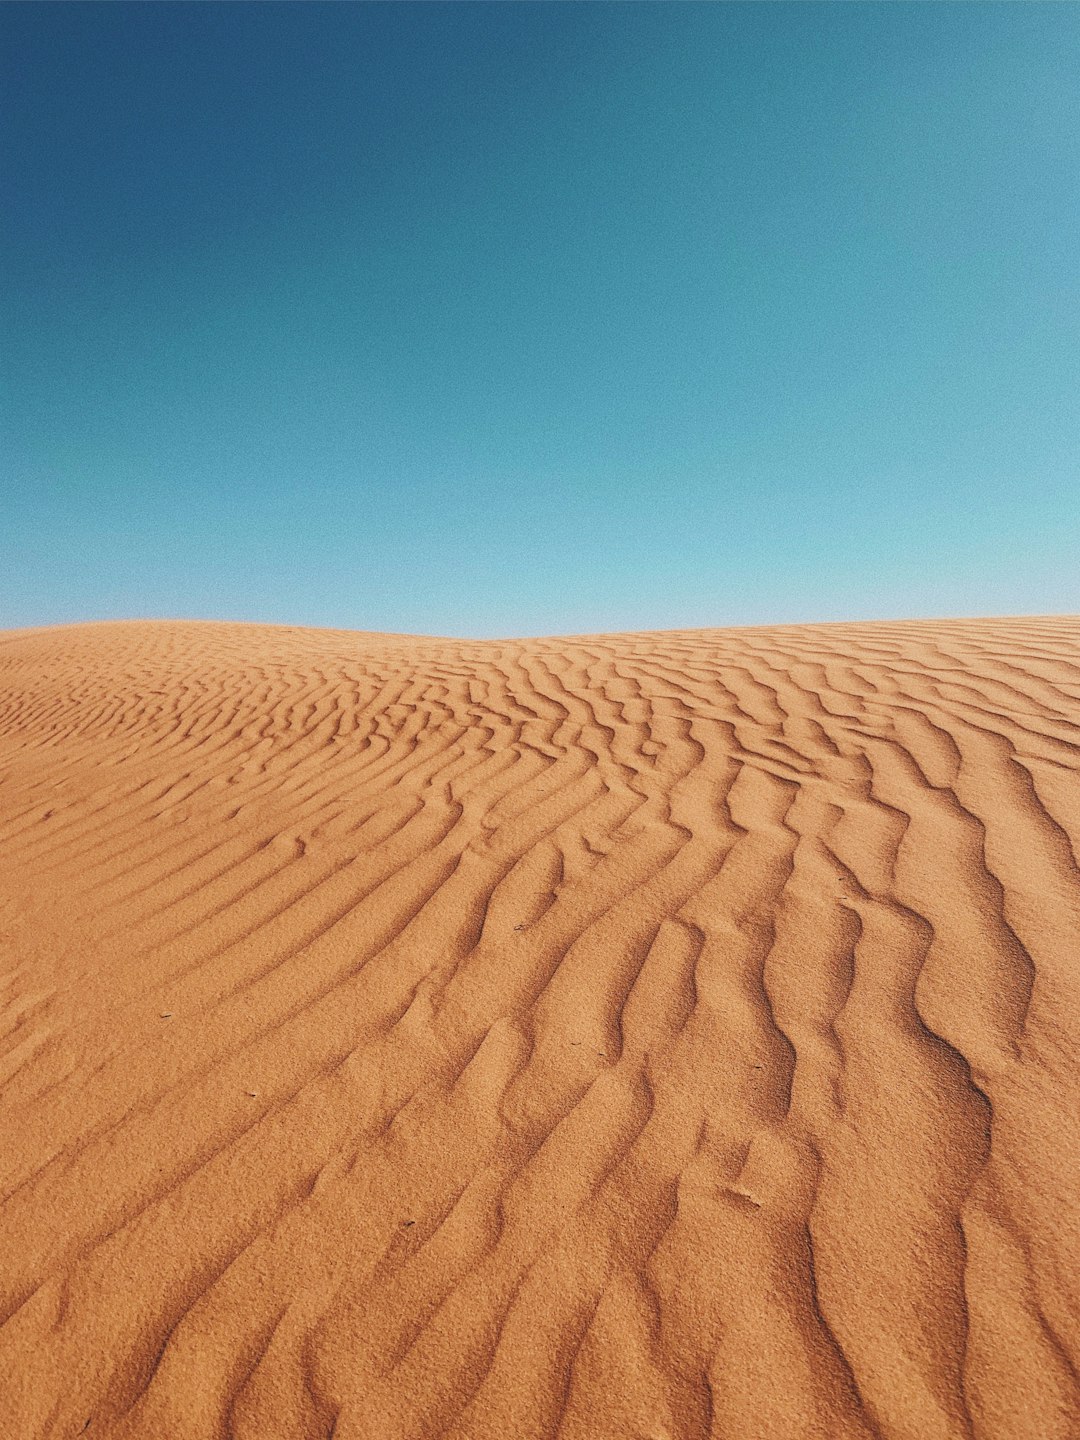 desert during daytime